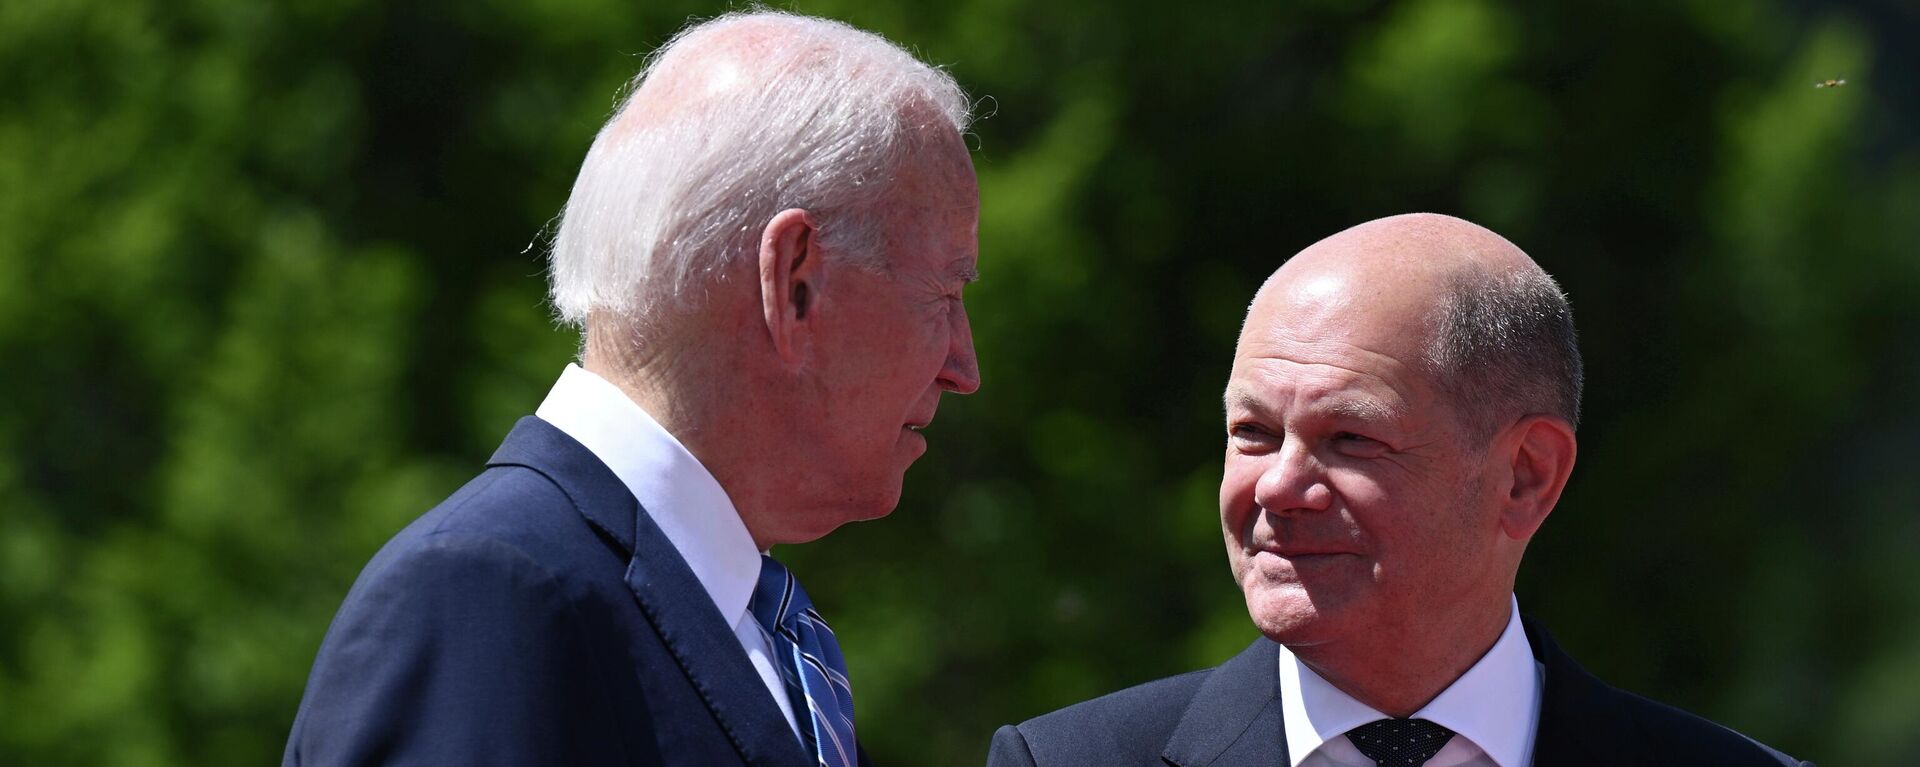 Joe Biden, presidente de EEUU, y Olaf Scholz, canciller de Alemania, durante la cumbre del G7 en Alemania, el 26 de junio del 2022 - Sputnik Mundo, 1920, 23.11.2022